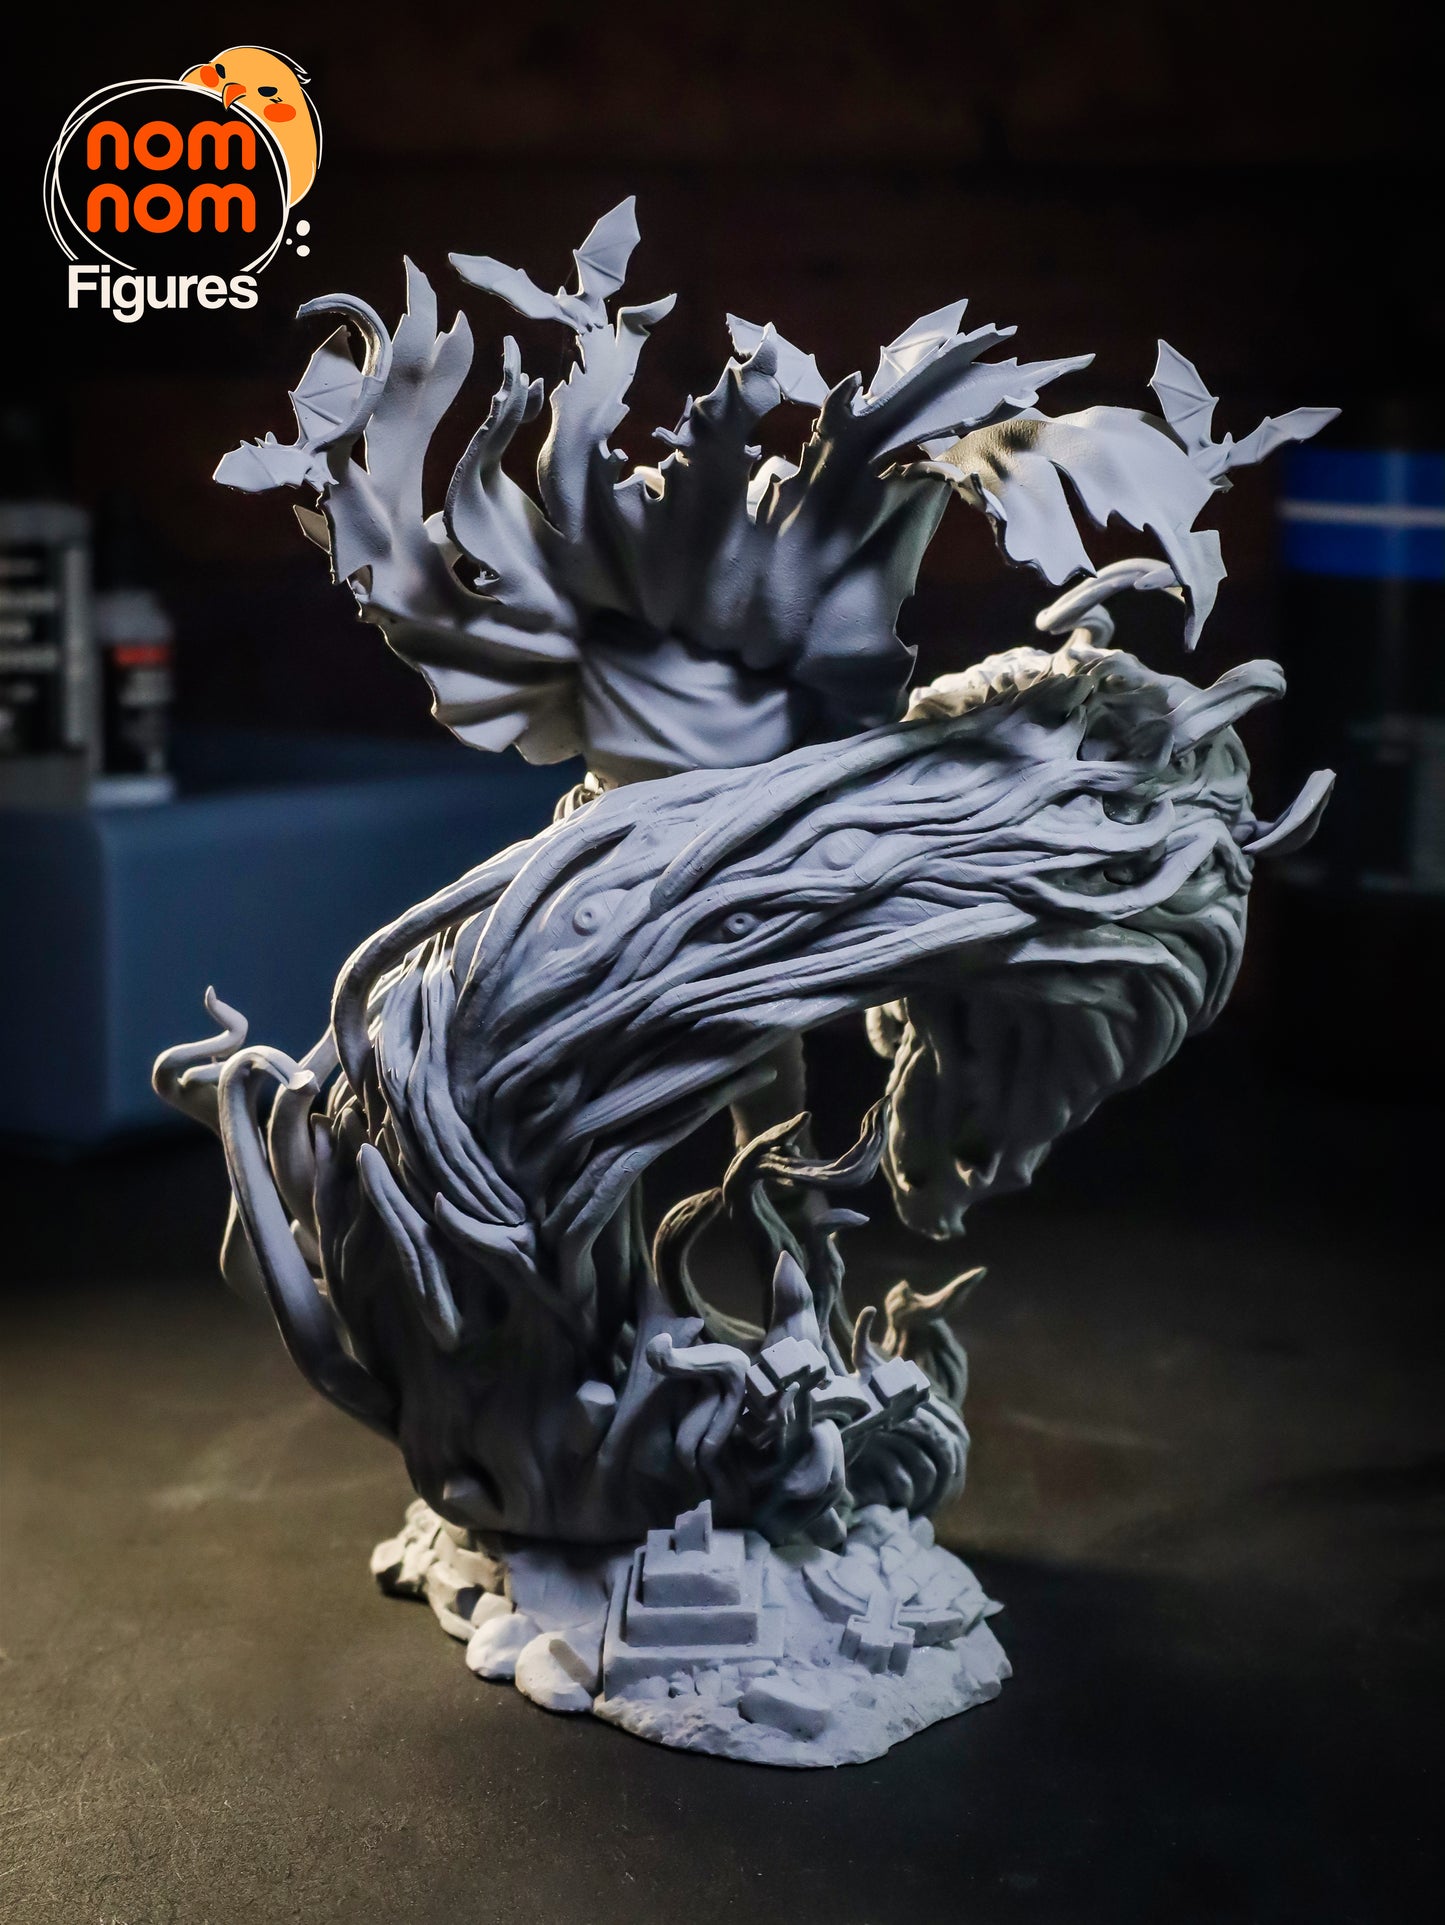 Legendary Vampire | Resin Garage Kit Sculpture Anime Statue | Nomnom Figures - Tattles Told 3D